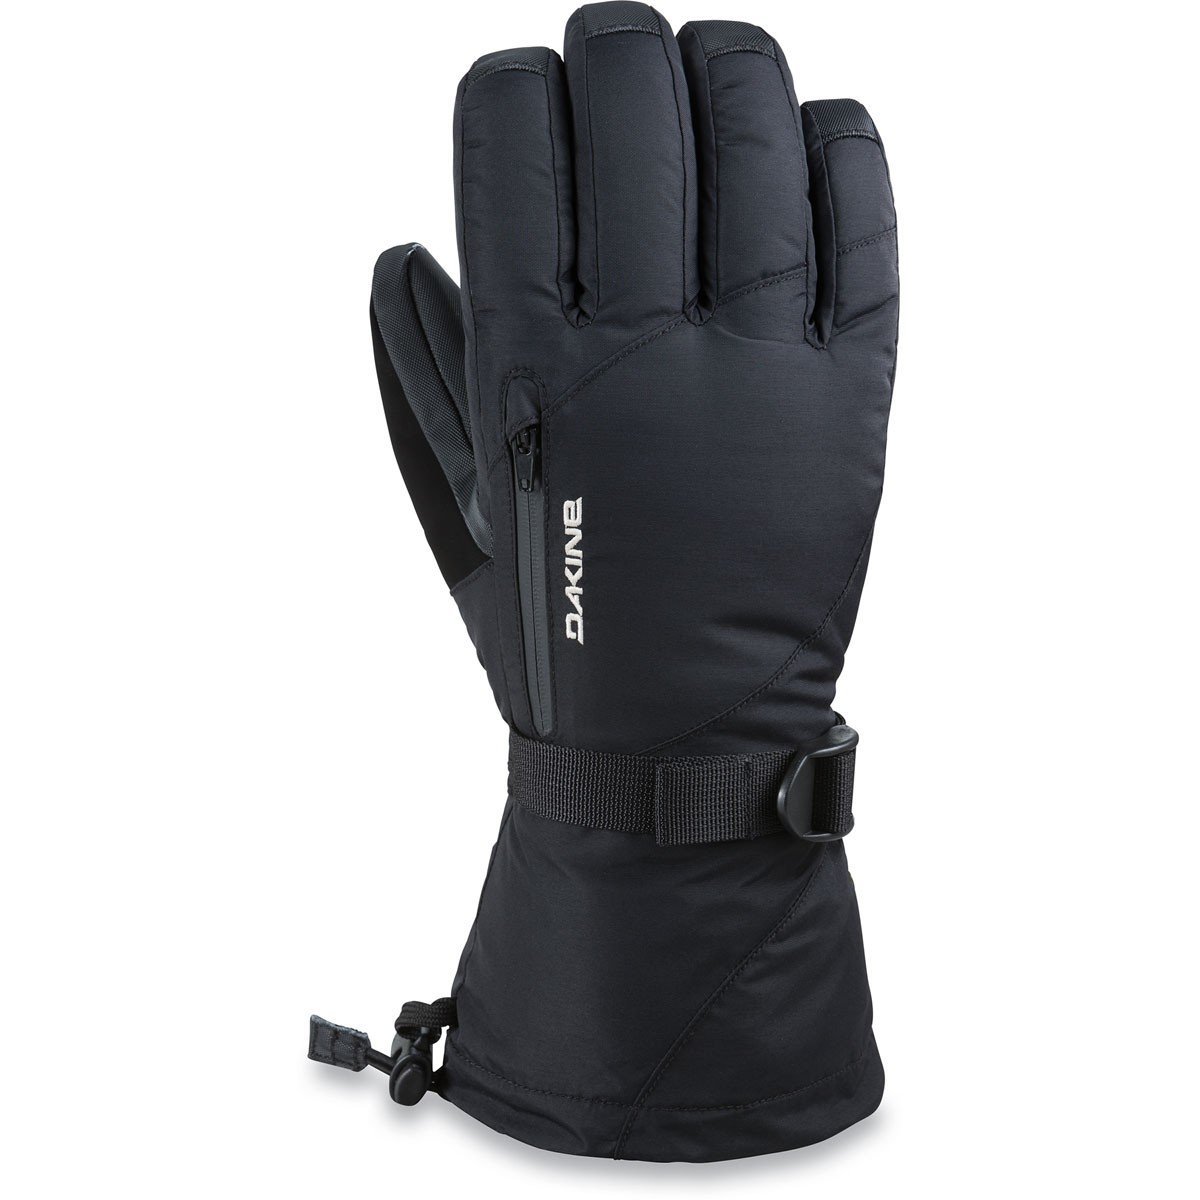 DAKINE Sequoia Gore-Tex Women's Glove Black WINTER GLOVES - Women's Snowboard Gloves and Mitts Dakine S 